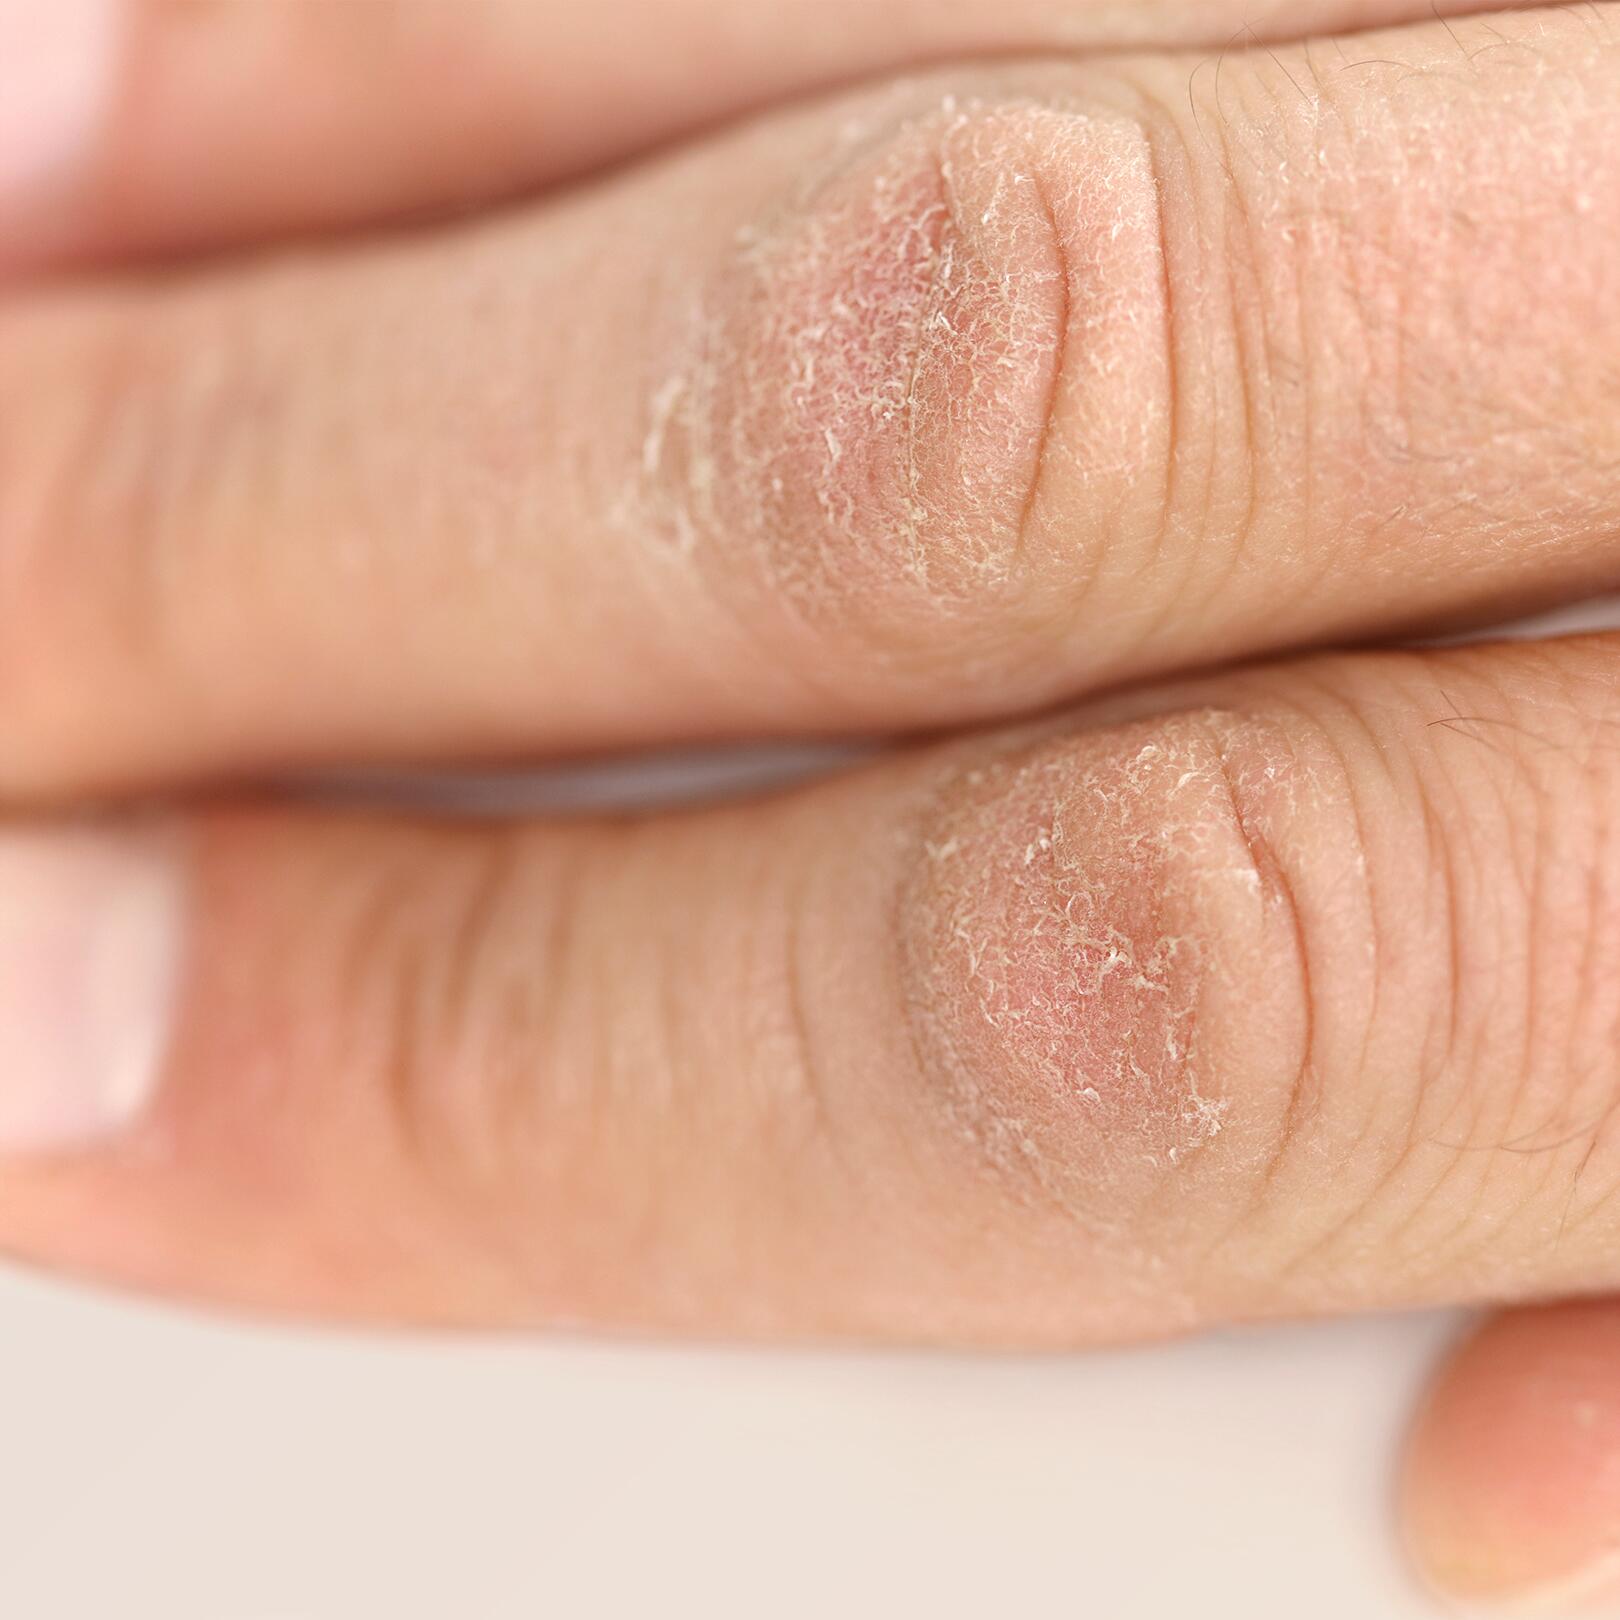 mover under Begyndelsen Hvordan genopbygger man tørre hænder? | Avène Termalkildevand